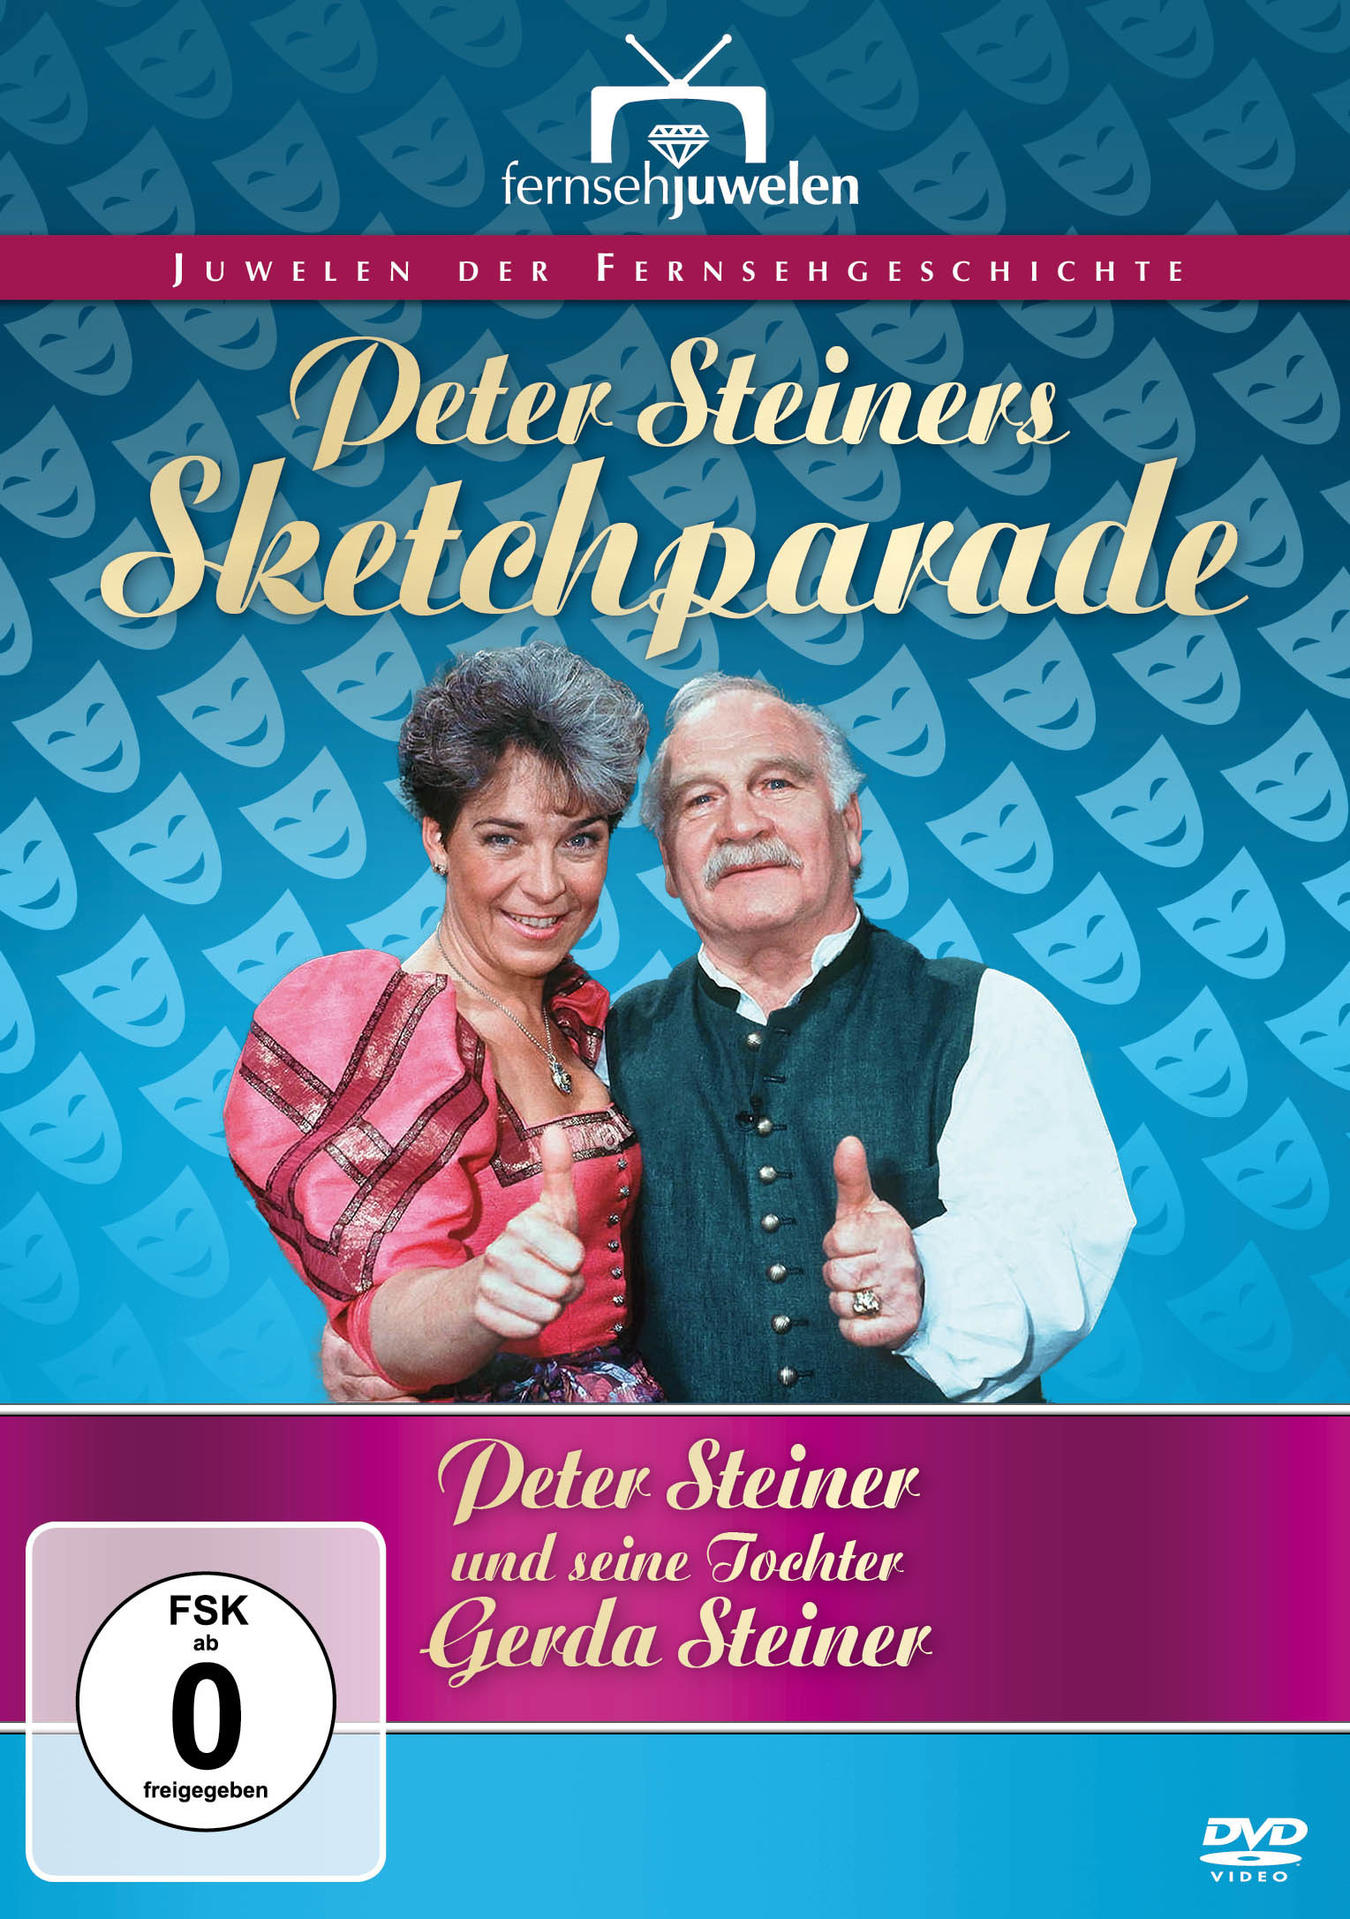 Peter Steiners Musikantenparade-Gesamtedition DVD (A